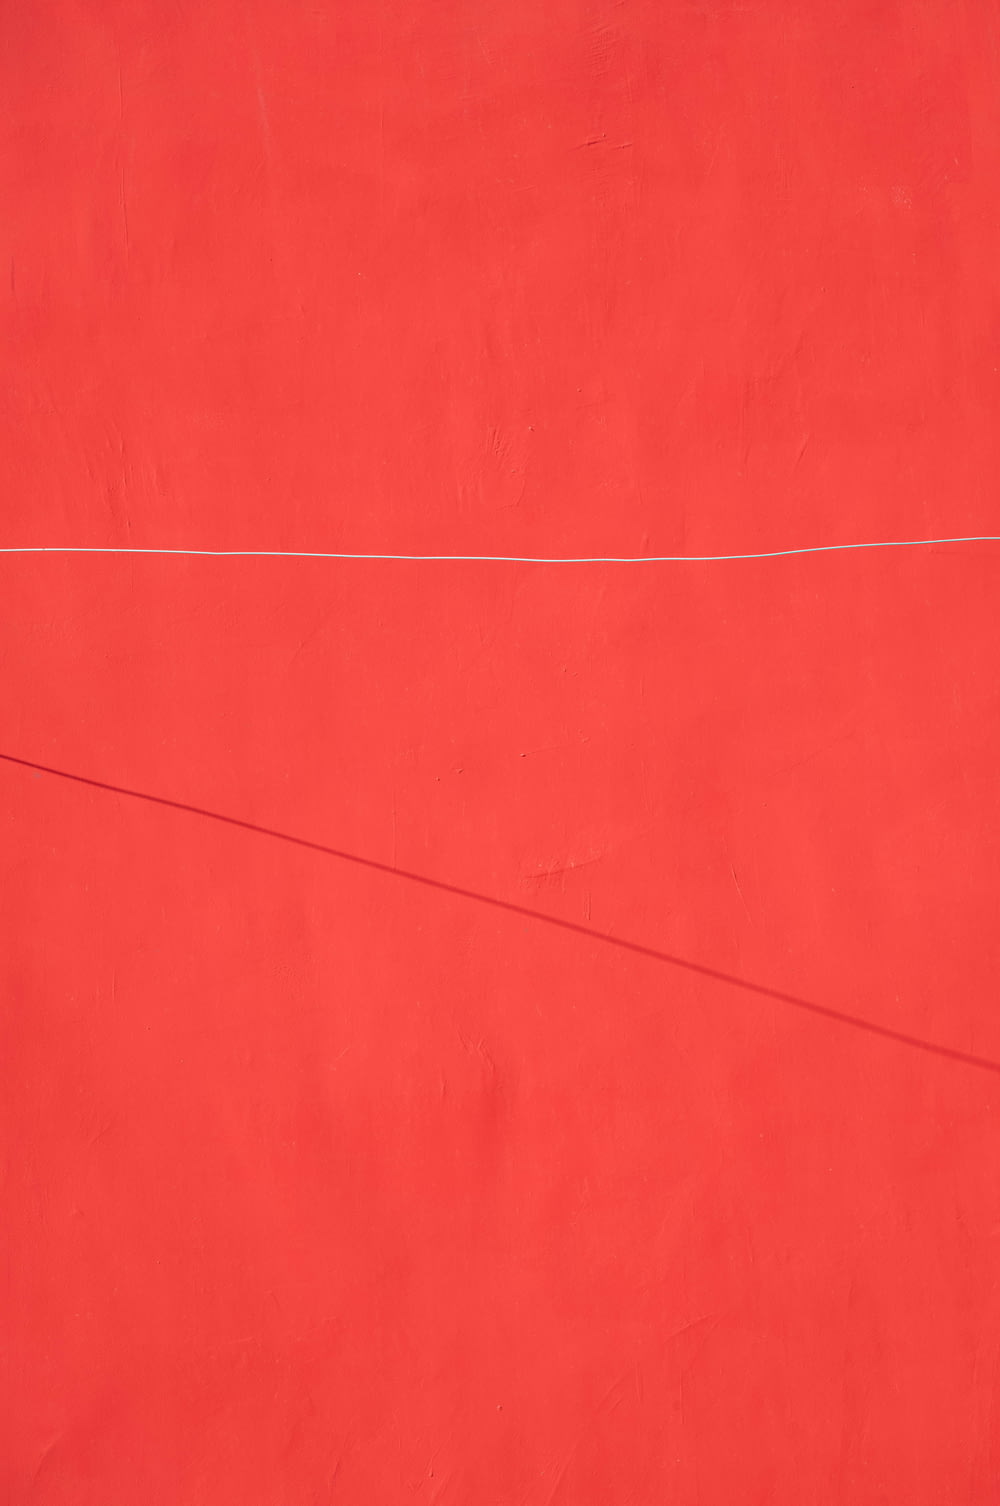 eine rote Wand mit einer weißen Linie darauf